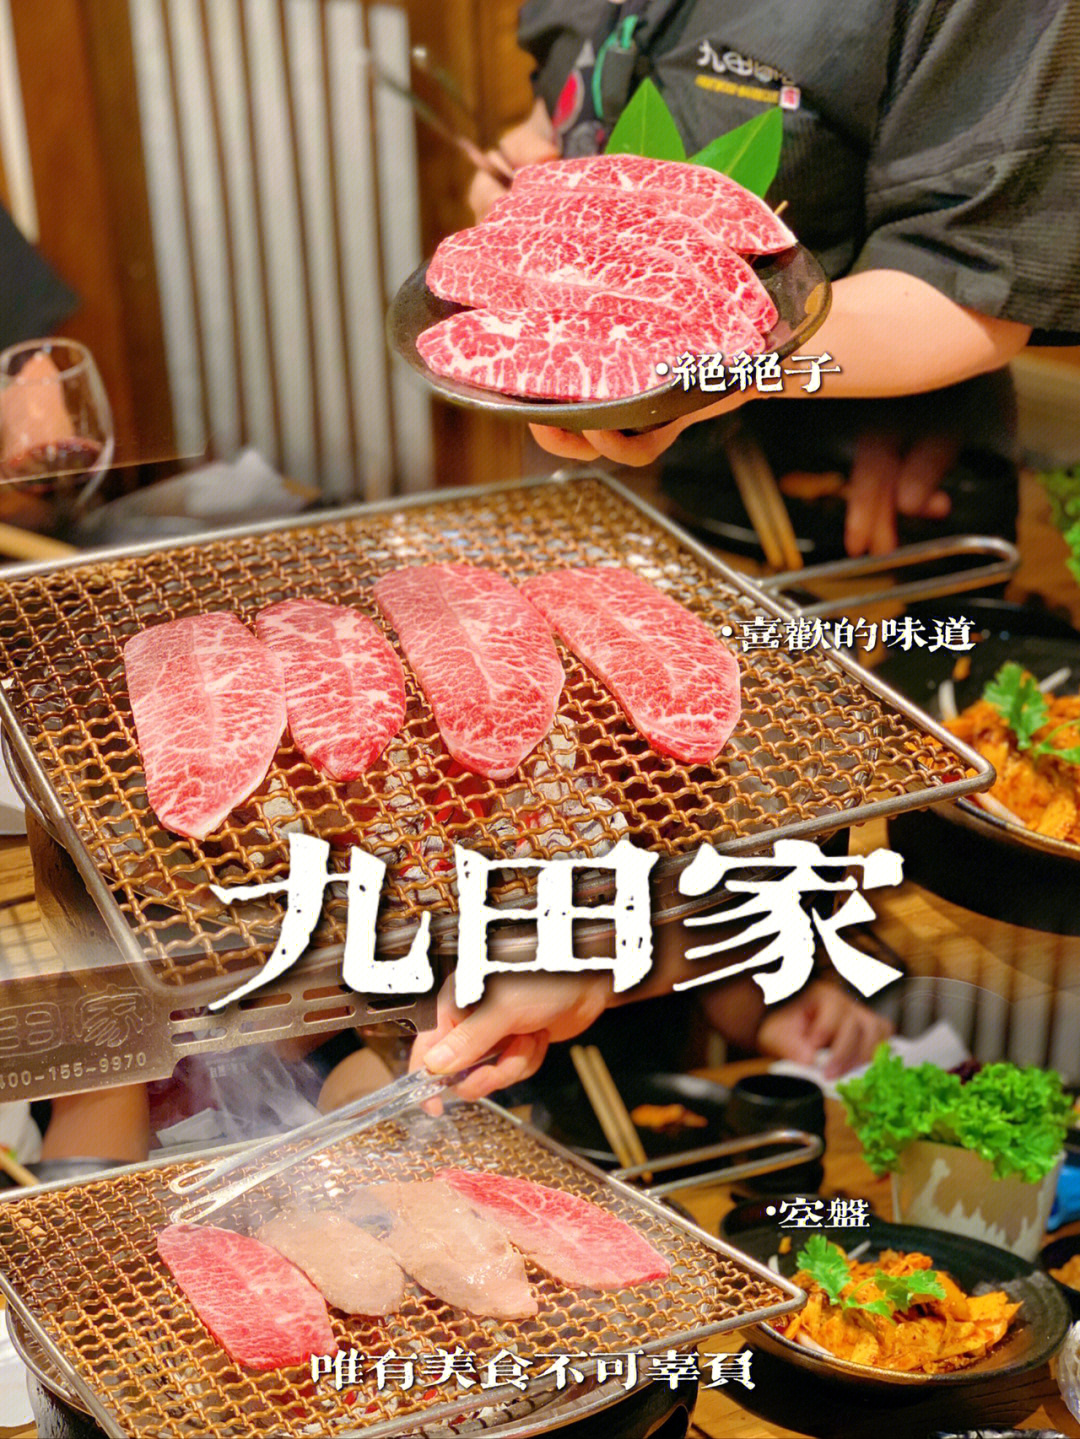 实至名归的网红烤肉店09九田家黑牛烤肉料理